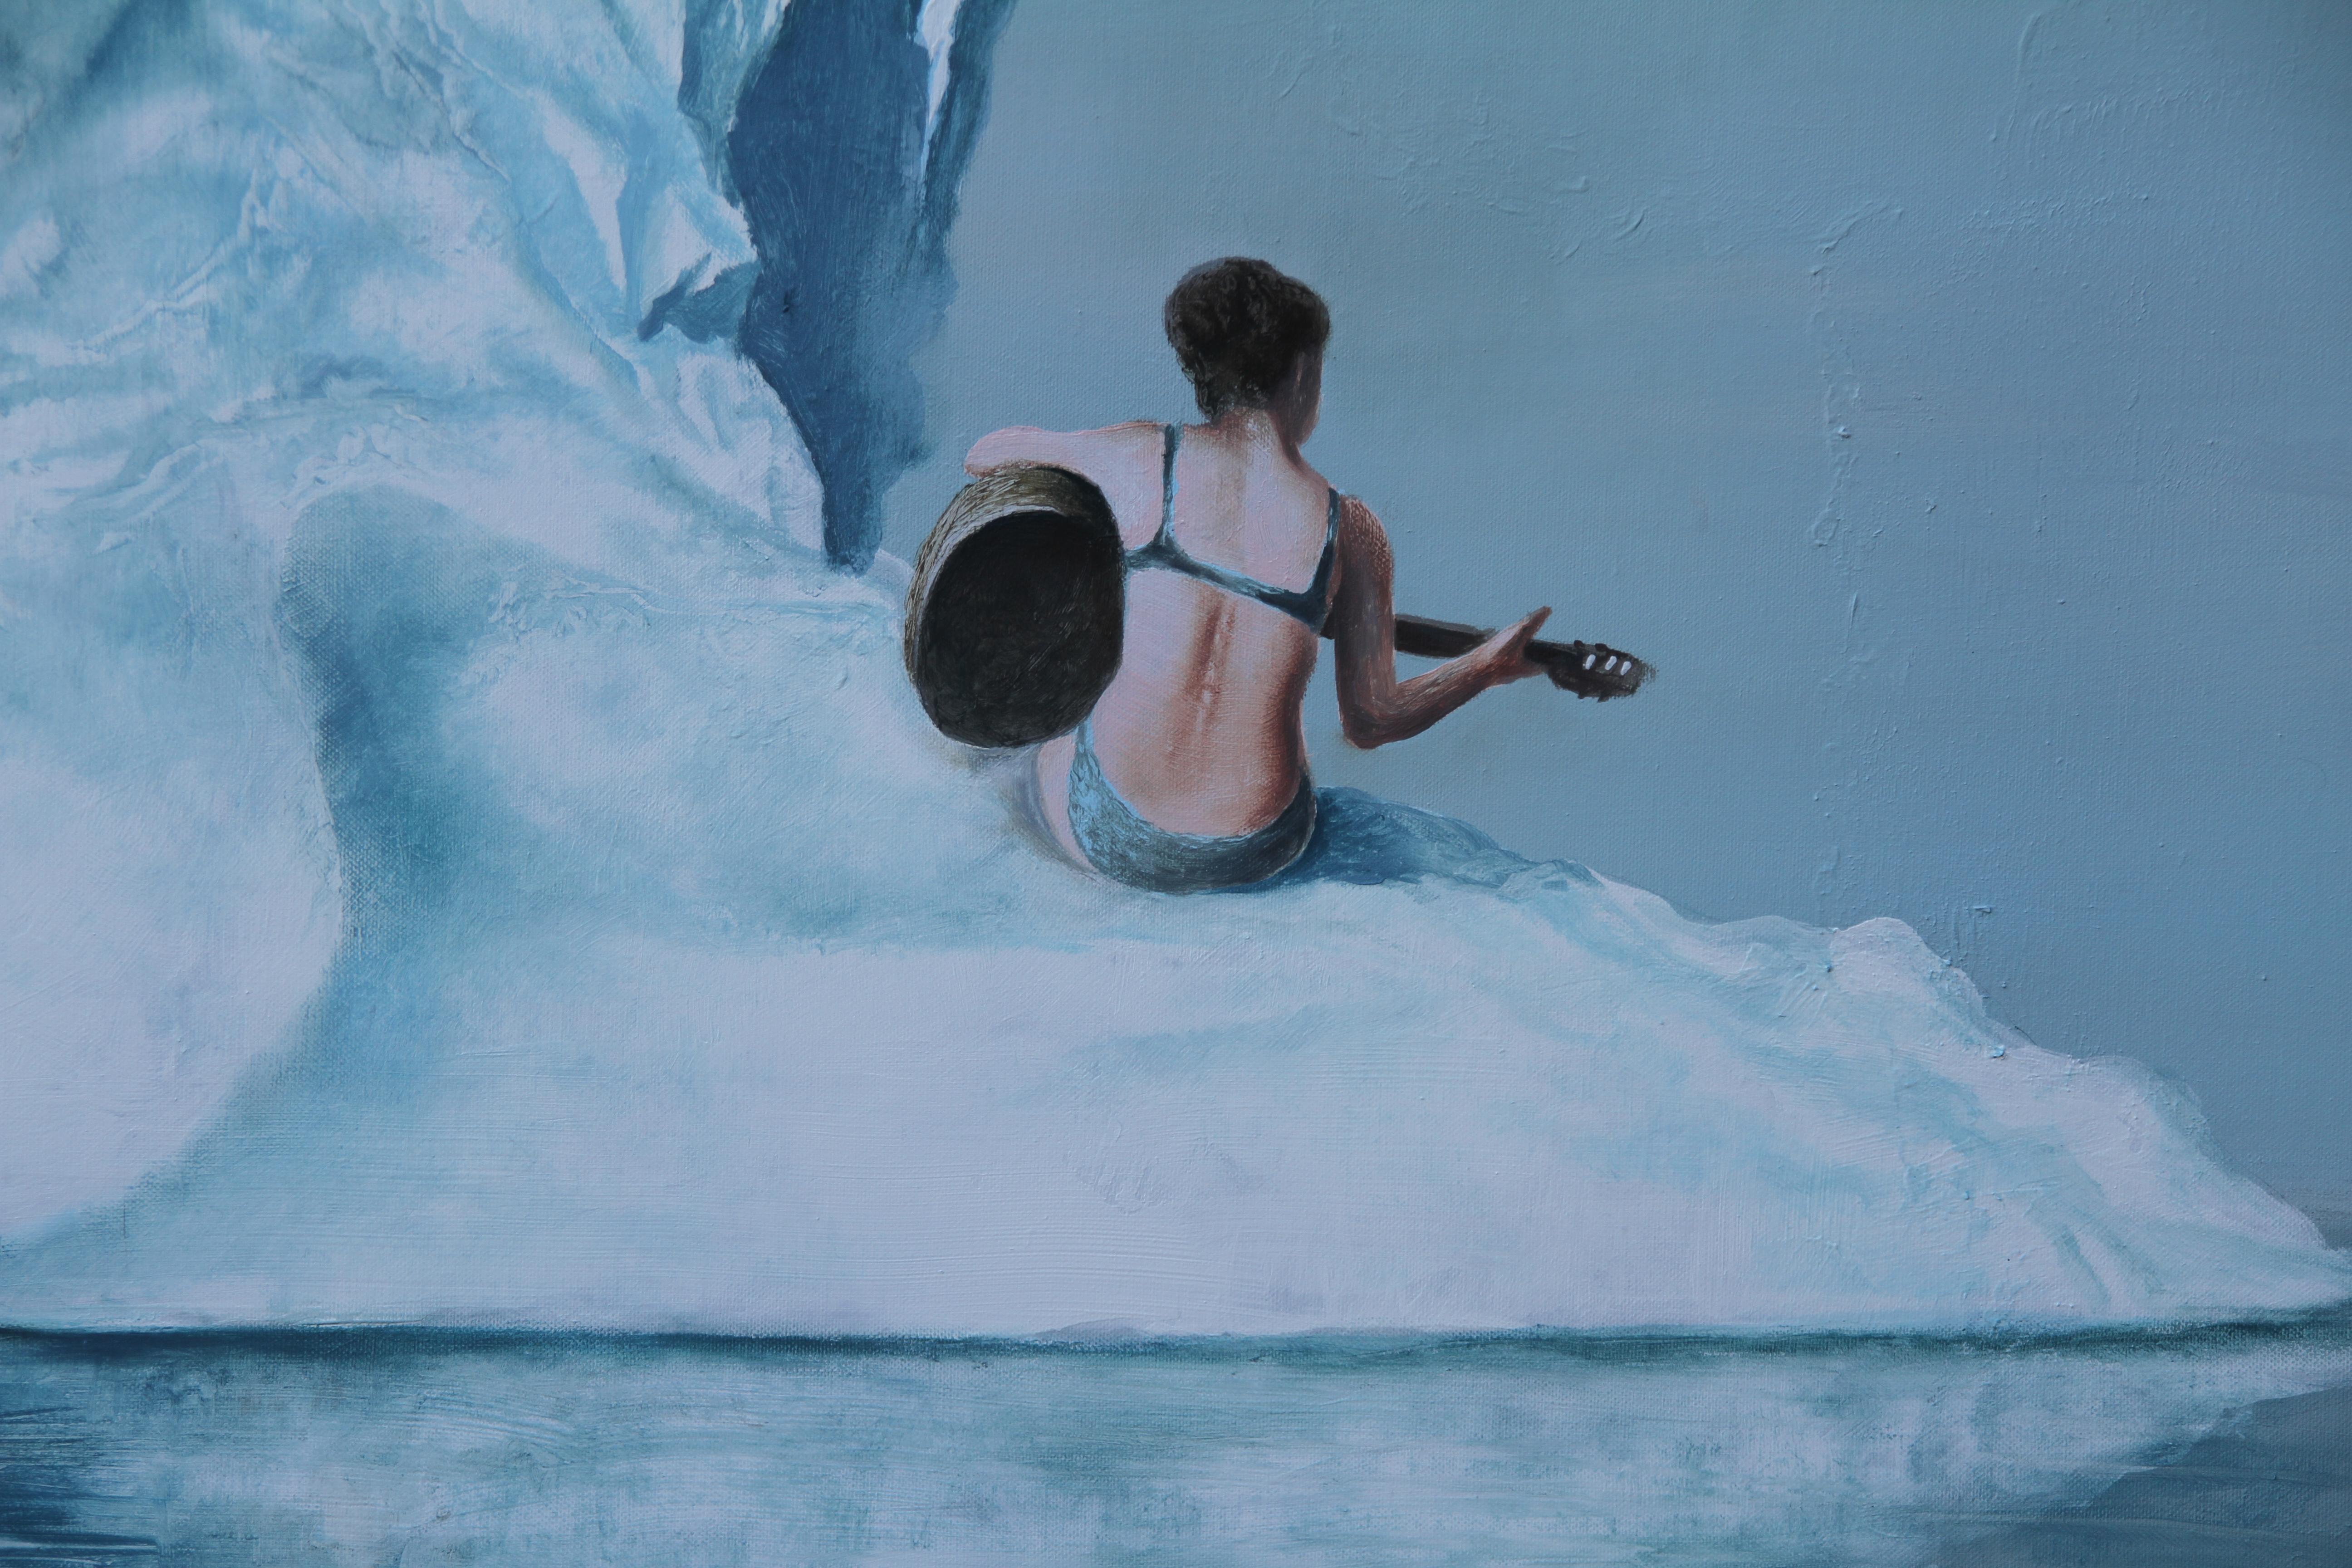 Wunderschönes Originalgemälde auf Leinwand, das einen Gorilla in kontemplativem Zustand auf der Spitze eines Eisbergs zeigt, während eine junge Frau neben ihm Gitarre spielt.

Stichworte; Gitarre spielende Frau, Americana, Surrealismus, Affe,